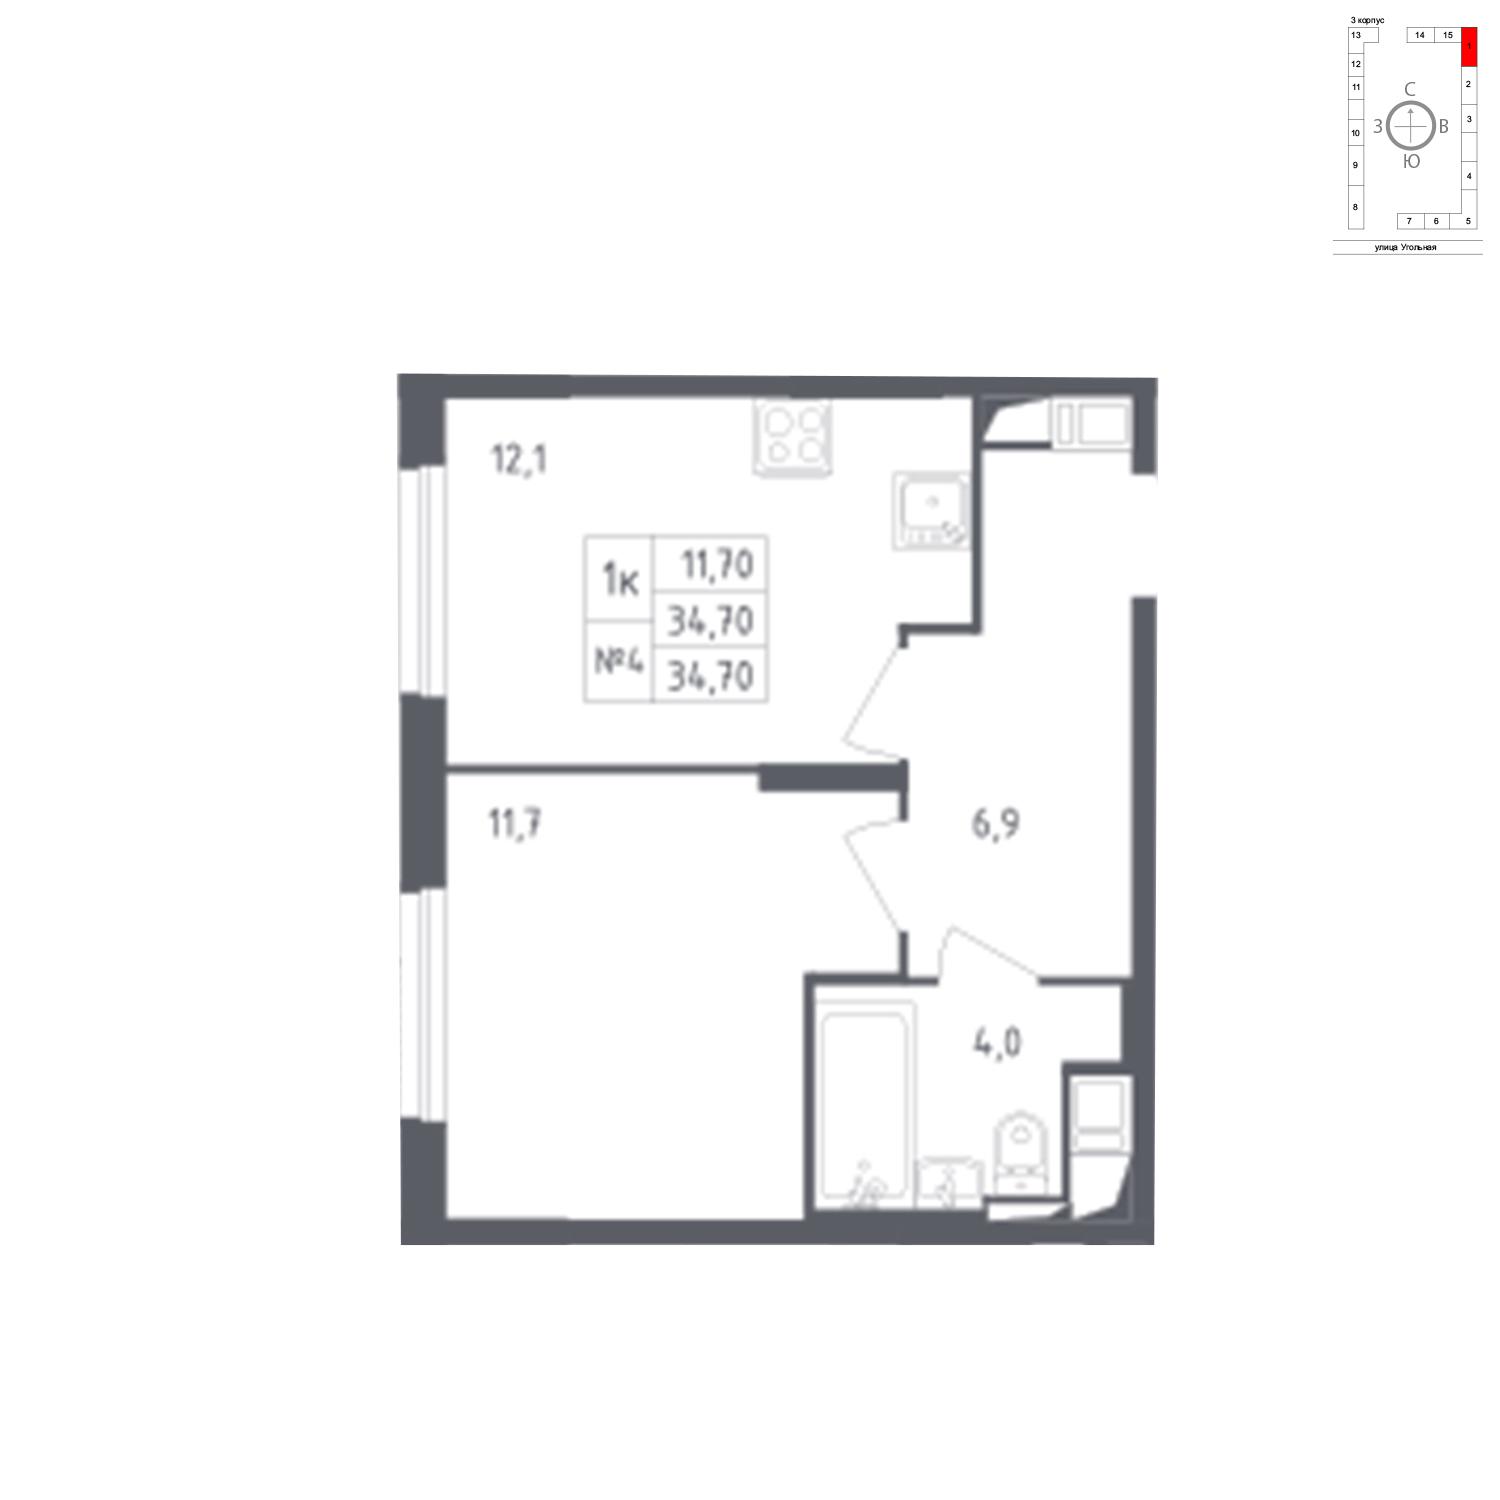 Продаётся 1-комнатная квартира в новостройке 34.7 кв.м. этаж 15/17 за 6 686 843 руб 